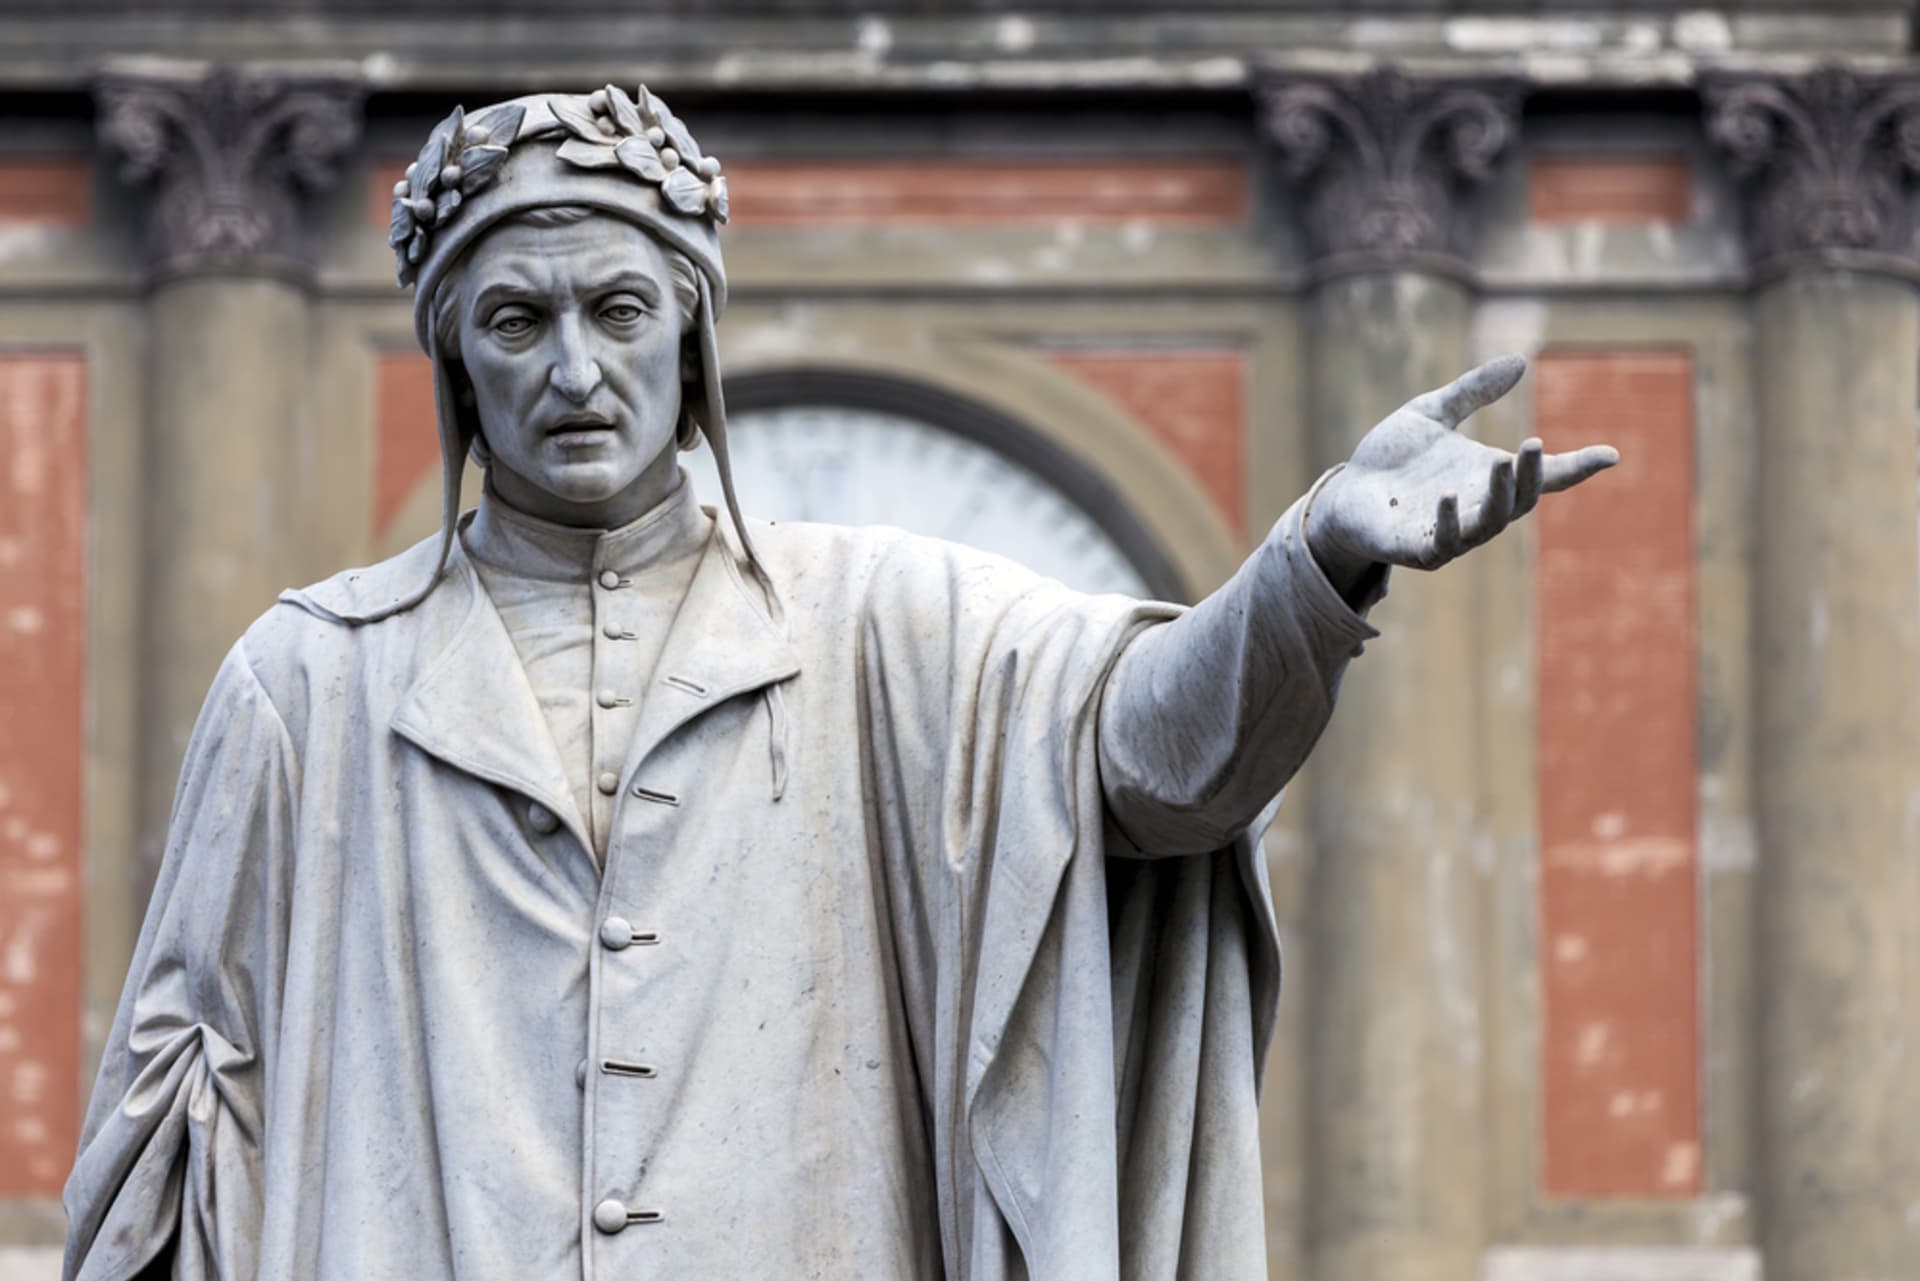 Socha italského básníka Dante Alighieriho, která se nachází v Neapoli.